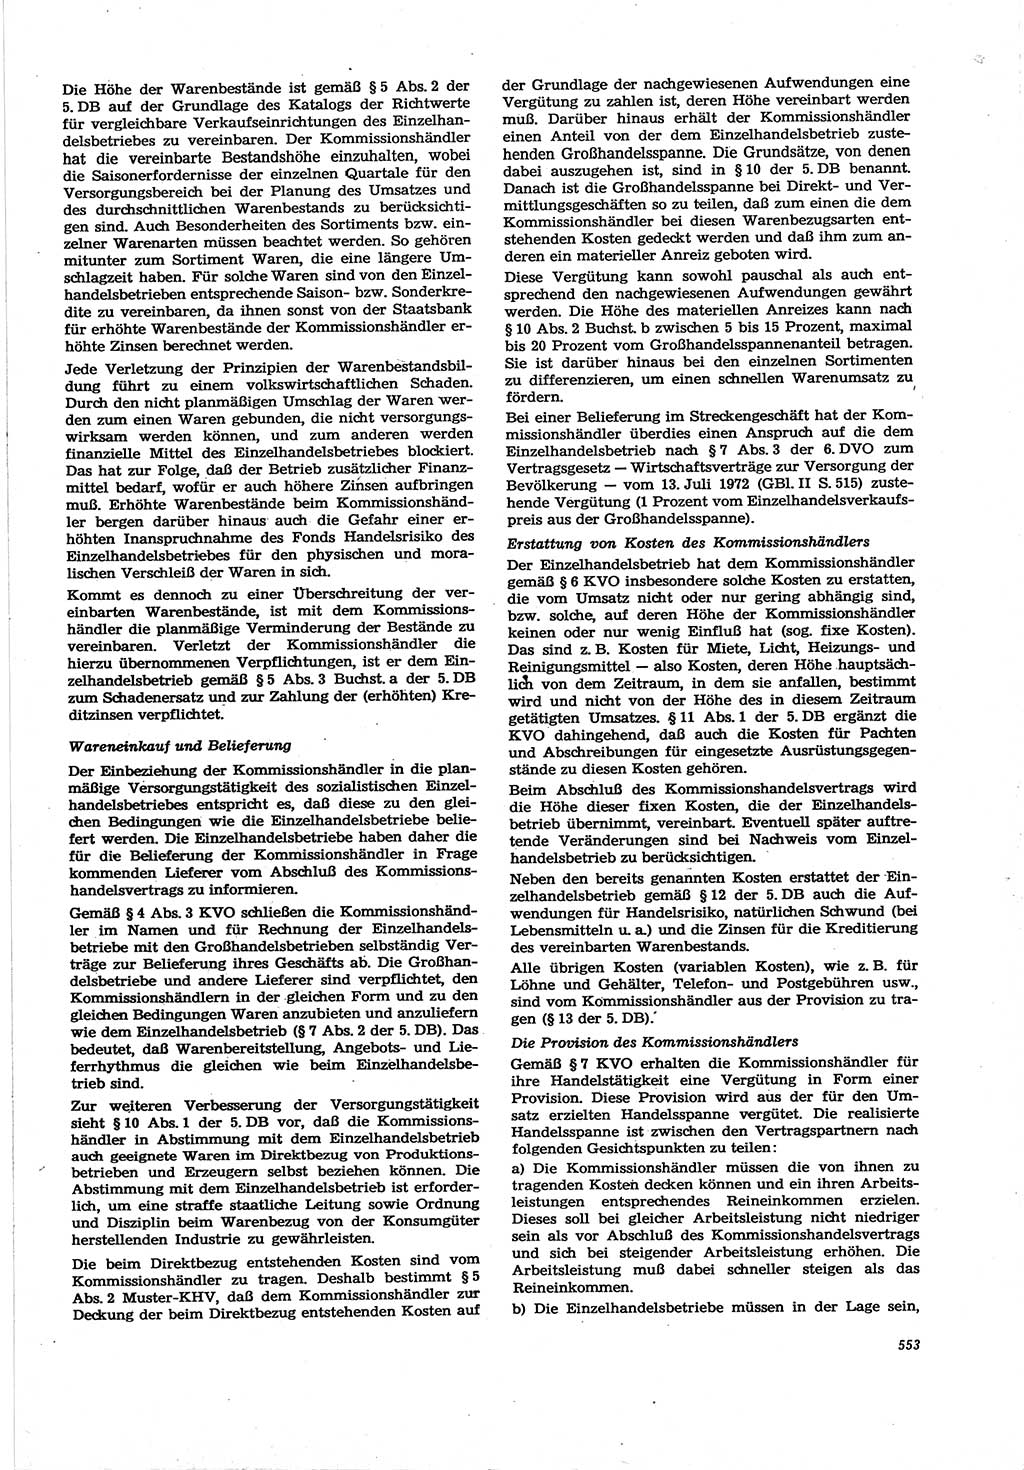 Neue Justiz (NJ), Zeitschrift für Recht und Rechtswissenschaft [Deutsche Demokratische Republik (DDR)], 30. Jahrgang 1976, Seite 553 (NJ DDR 1976, S. 553)